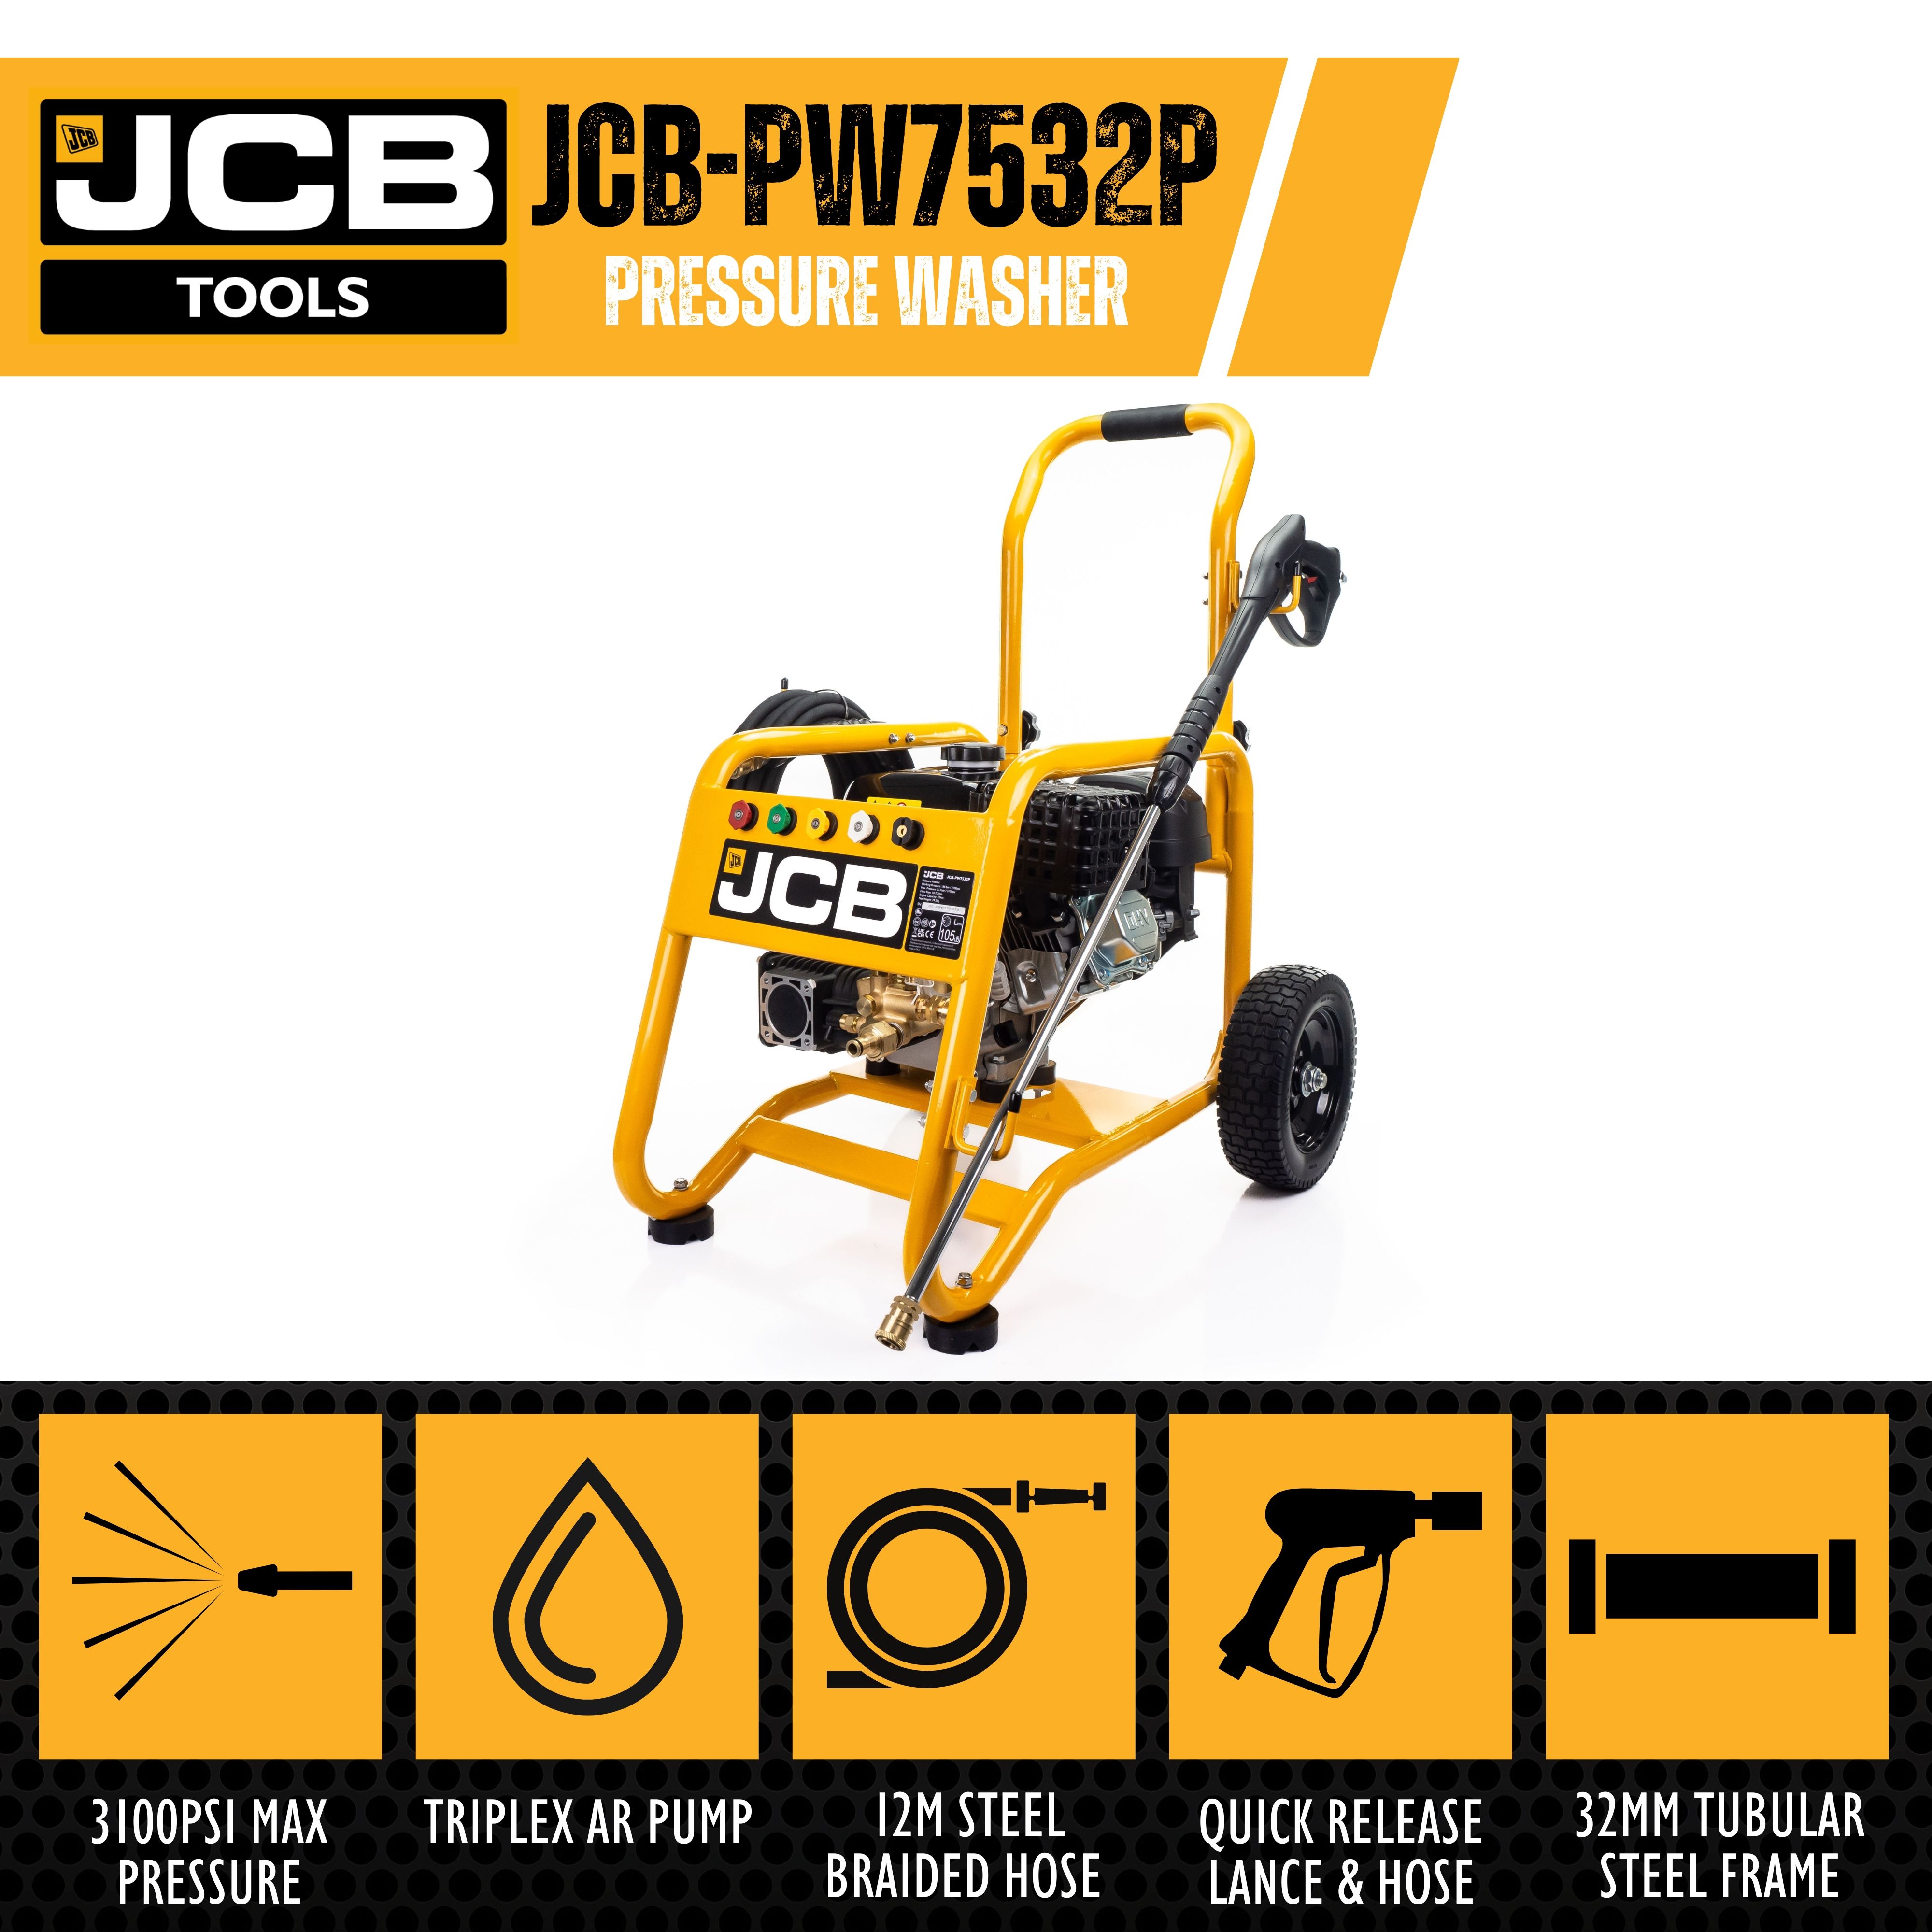 JCB PETROL PRESSURE WASHER 3100PSI / 213BAR, 7.5HP JCB ENGINE, TRIPLEX AR PUMP, 10.7L/MIN FLOW RATE | JCB-PW7532P